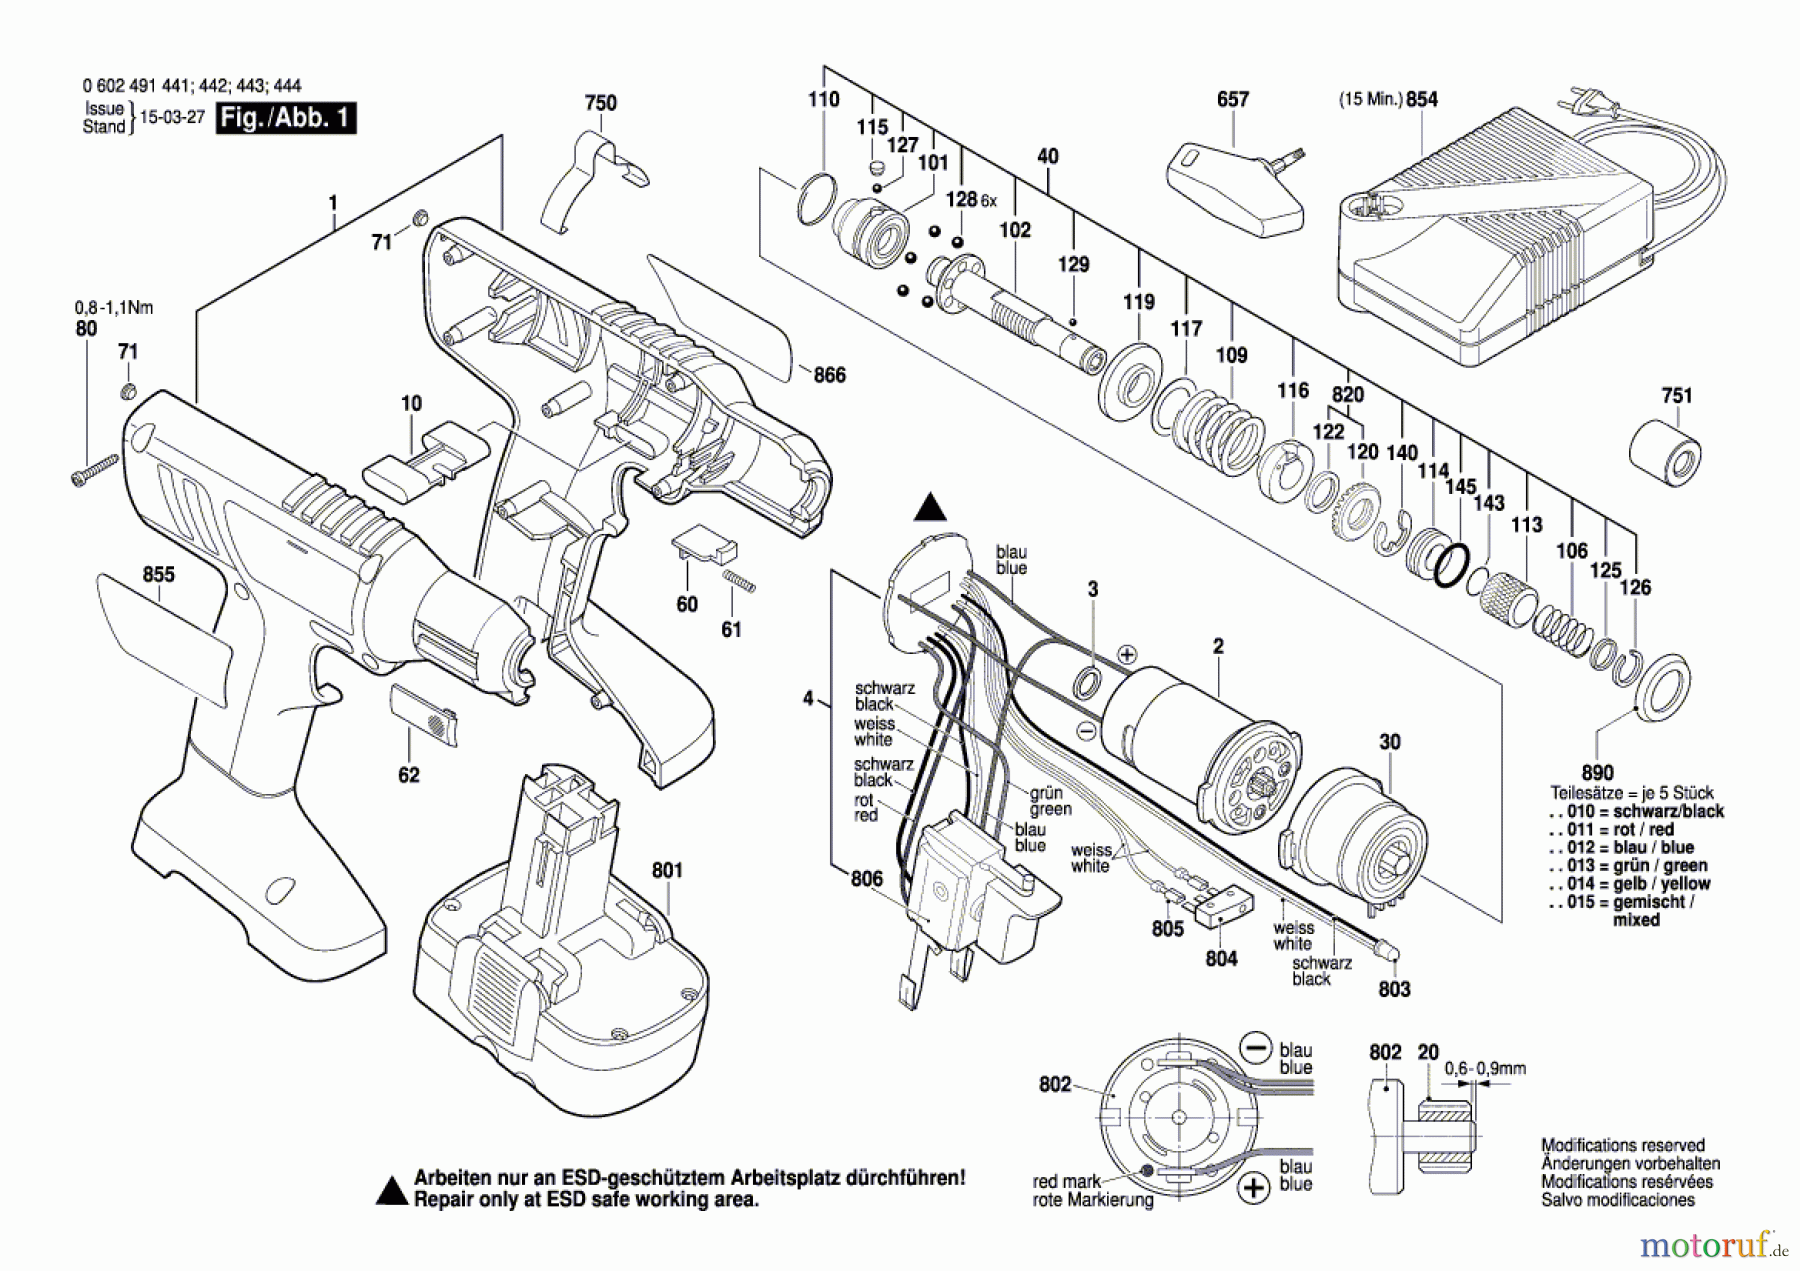  Bosch Akku Werkzeug Akku-Schrauber BT EXACT12 Seite 1